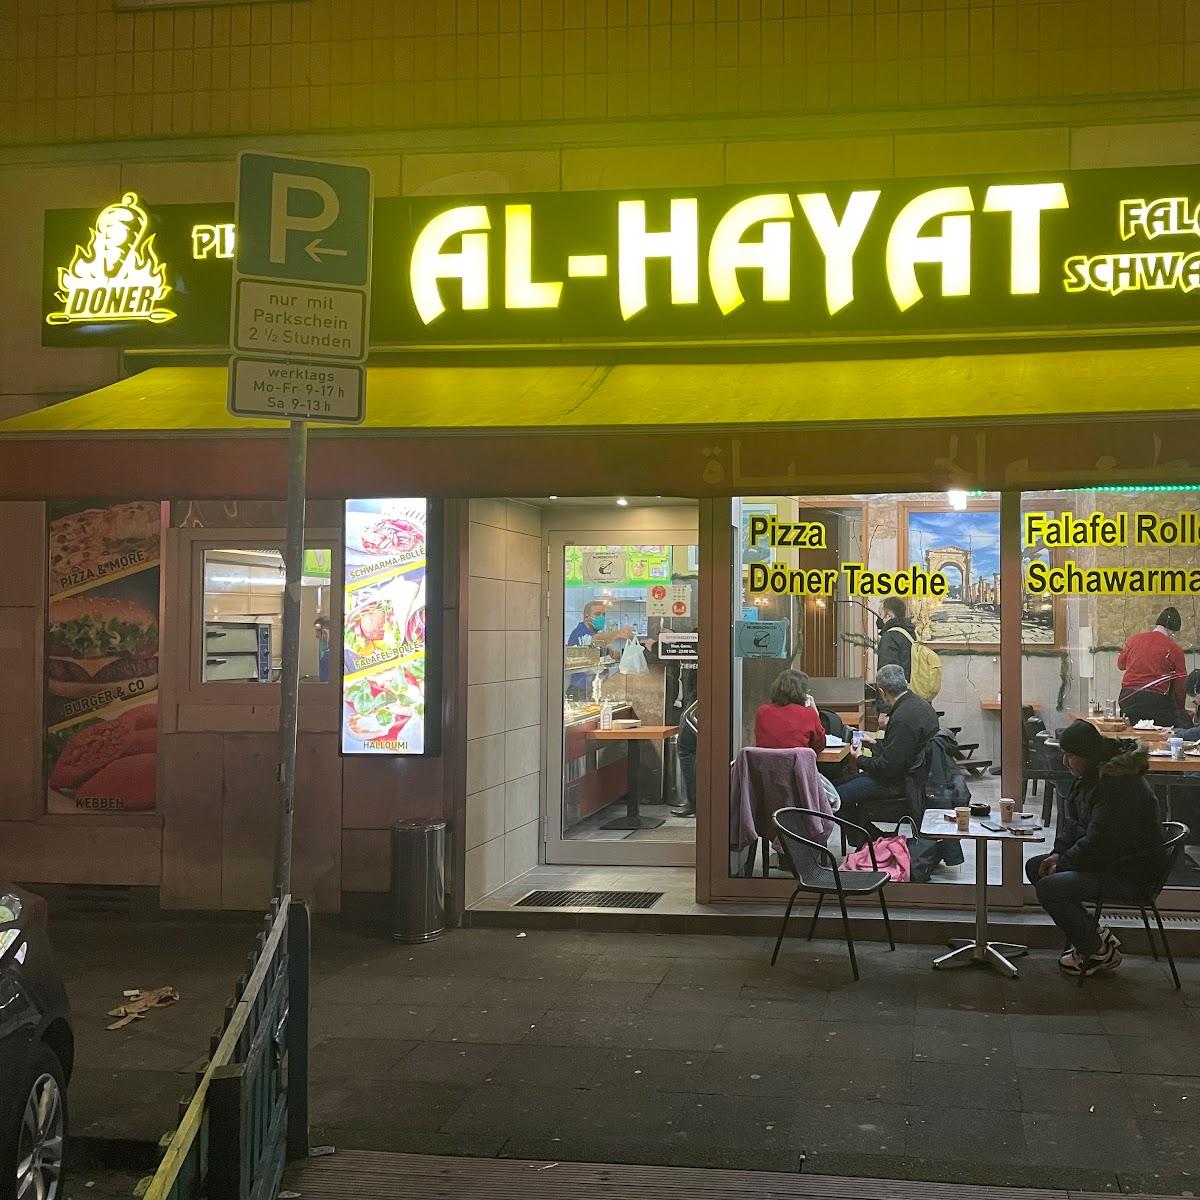 Restaurant "Al-Hayat Falafel" in Hannover